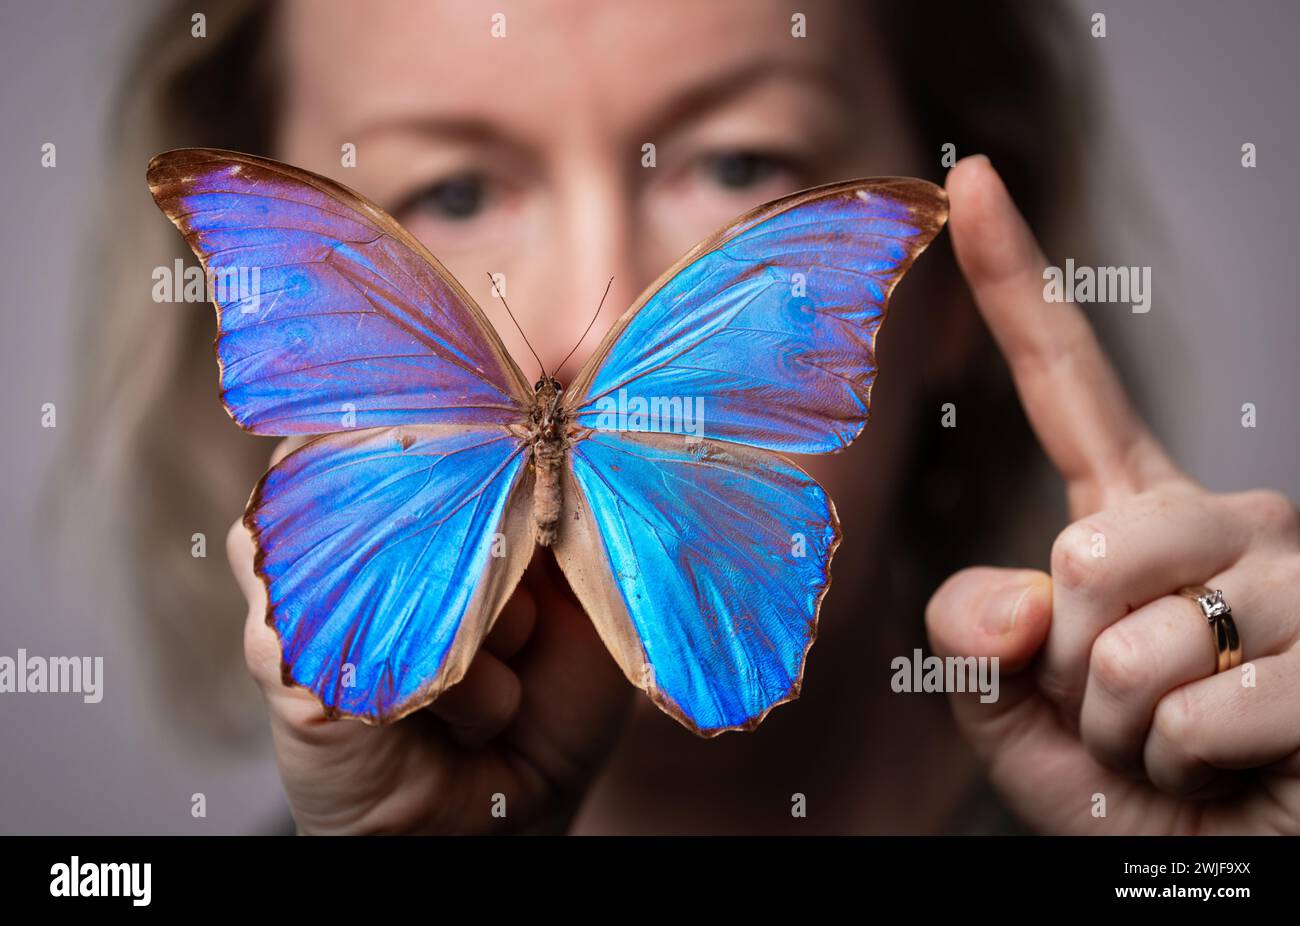 Kuratorin der Naturwissenschaft Clare Brown mit einem südamerikanischen Blauen Morpho-Schmetterling, der Teil einer Sammlung einiger der seltensten und schönsten Schmetterlinge der Welt ist, die im Leeds Discovery Centre aufbewahrt und ausgestellt werden. hier leben Hunderte von Arten aus der ganzen Welt, viele wurden vor mehr als einem Jahrhundert von Forschern und Wissenschaftlern gesammelt. Bilddatum: Donnerstag, 15. Februar 2024. Stockfoto